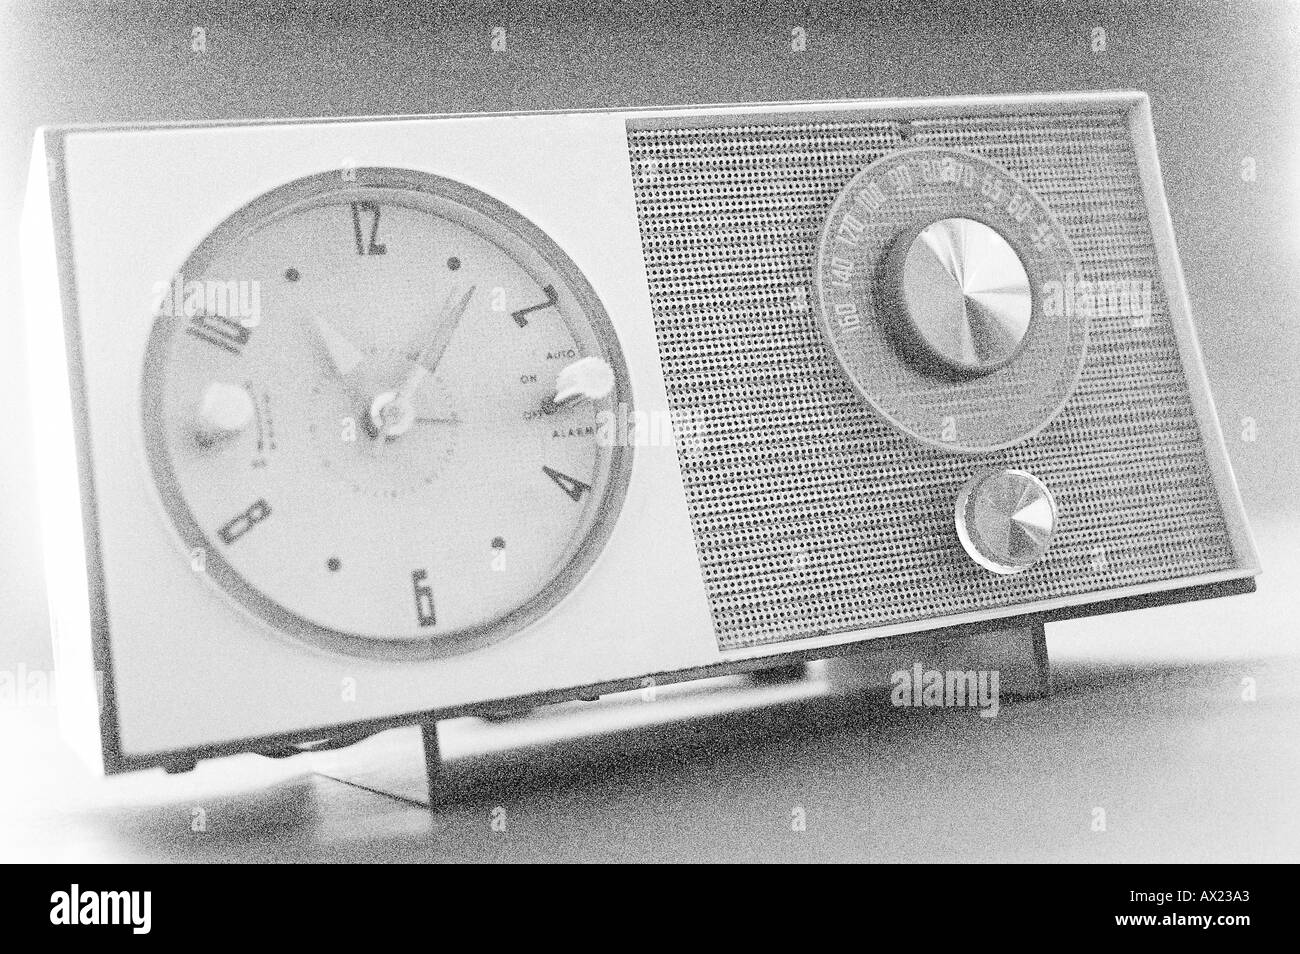 Antique clock radio uid 1344149 Stock Photo